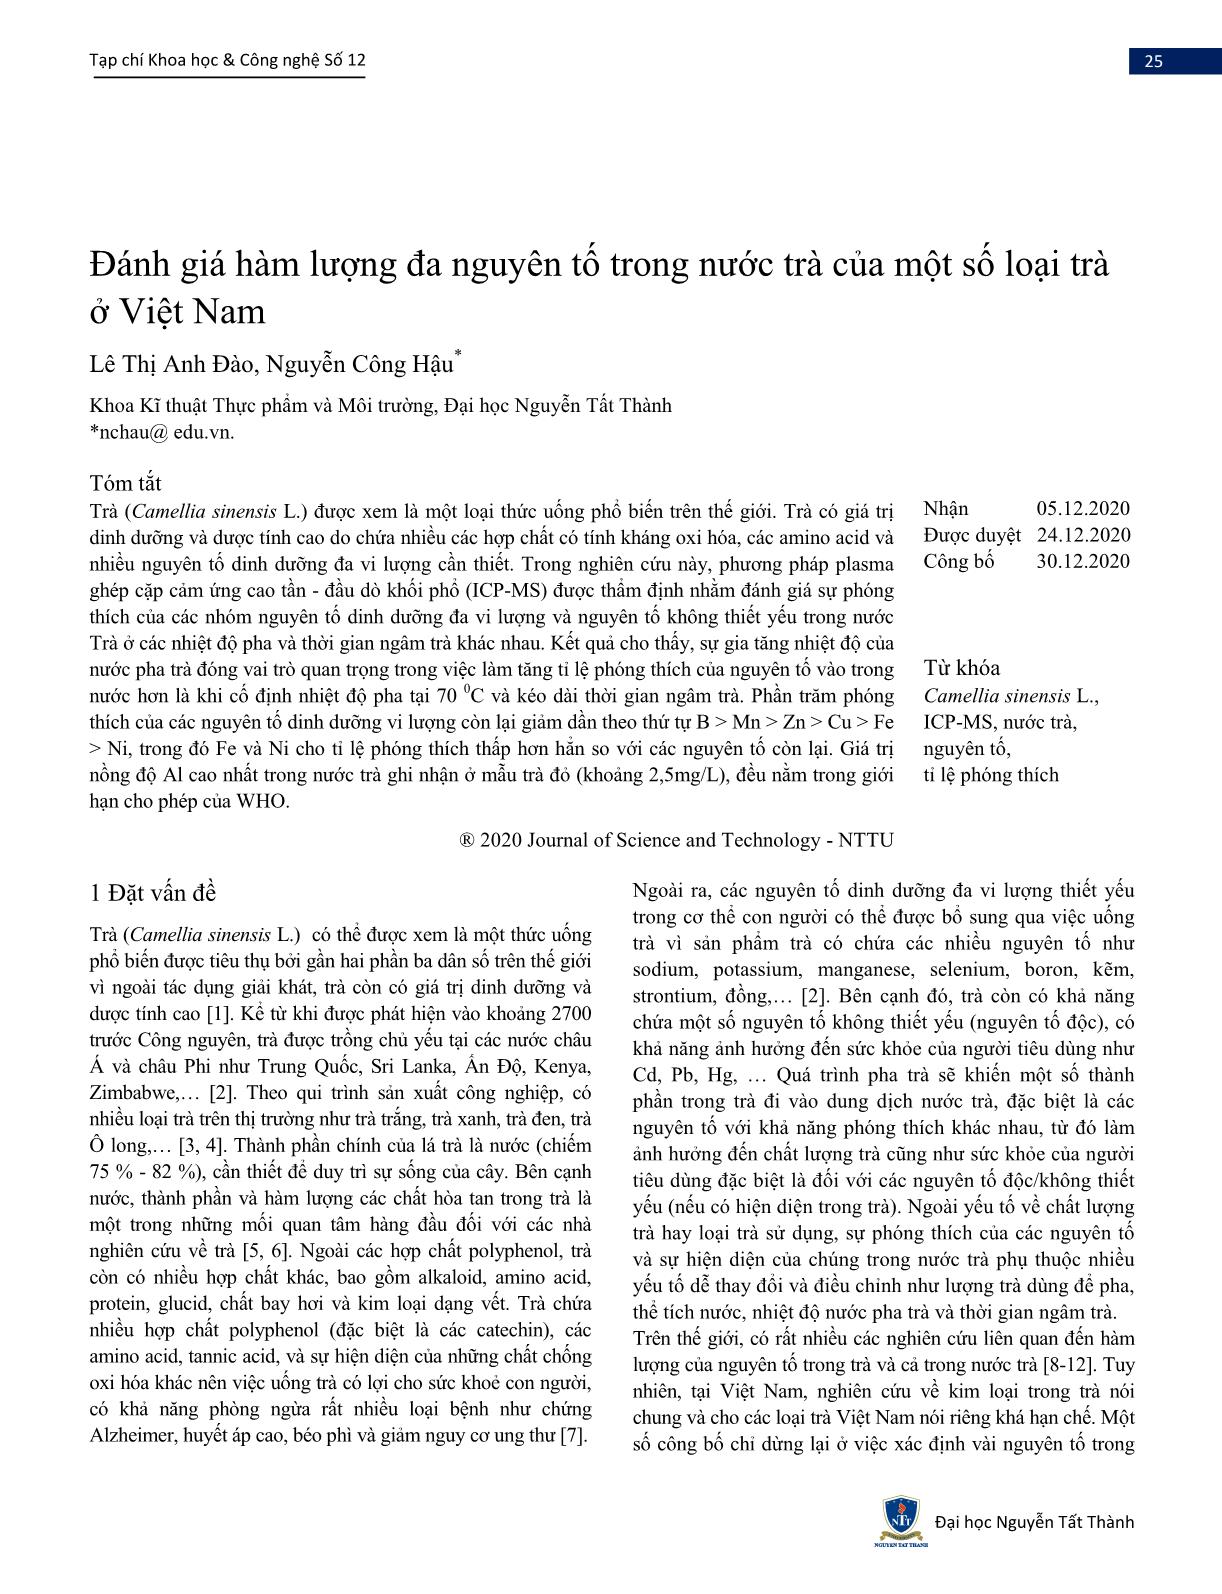 Đánh giá hàm lượng đa nguyên tố trong nước trà của một số loại trà ở Việt Nam trang 1